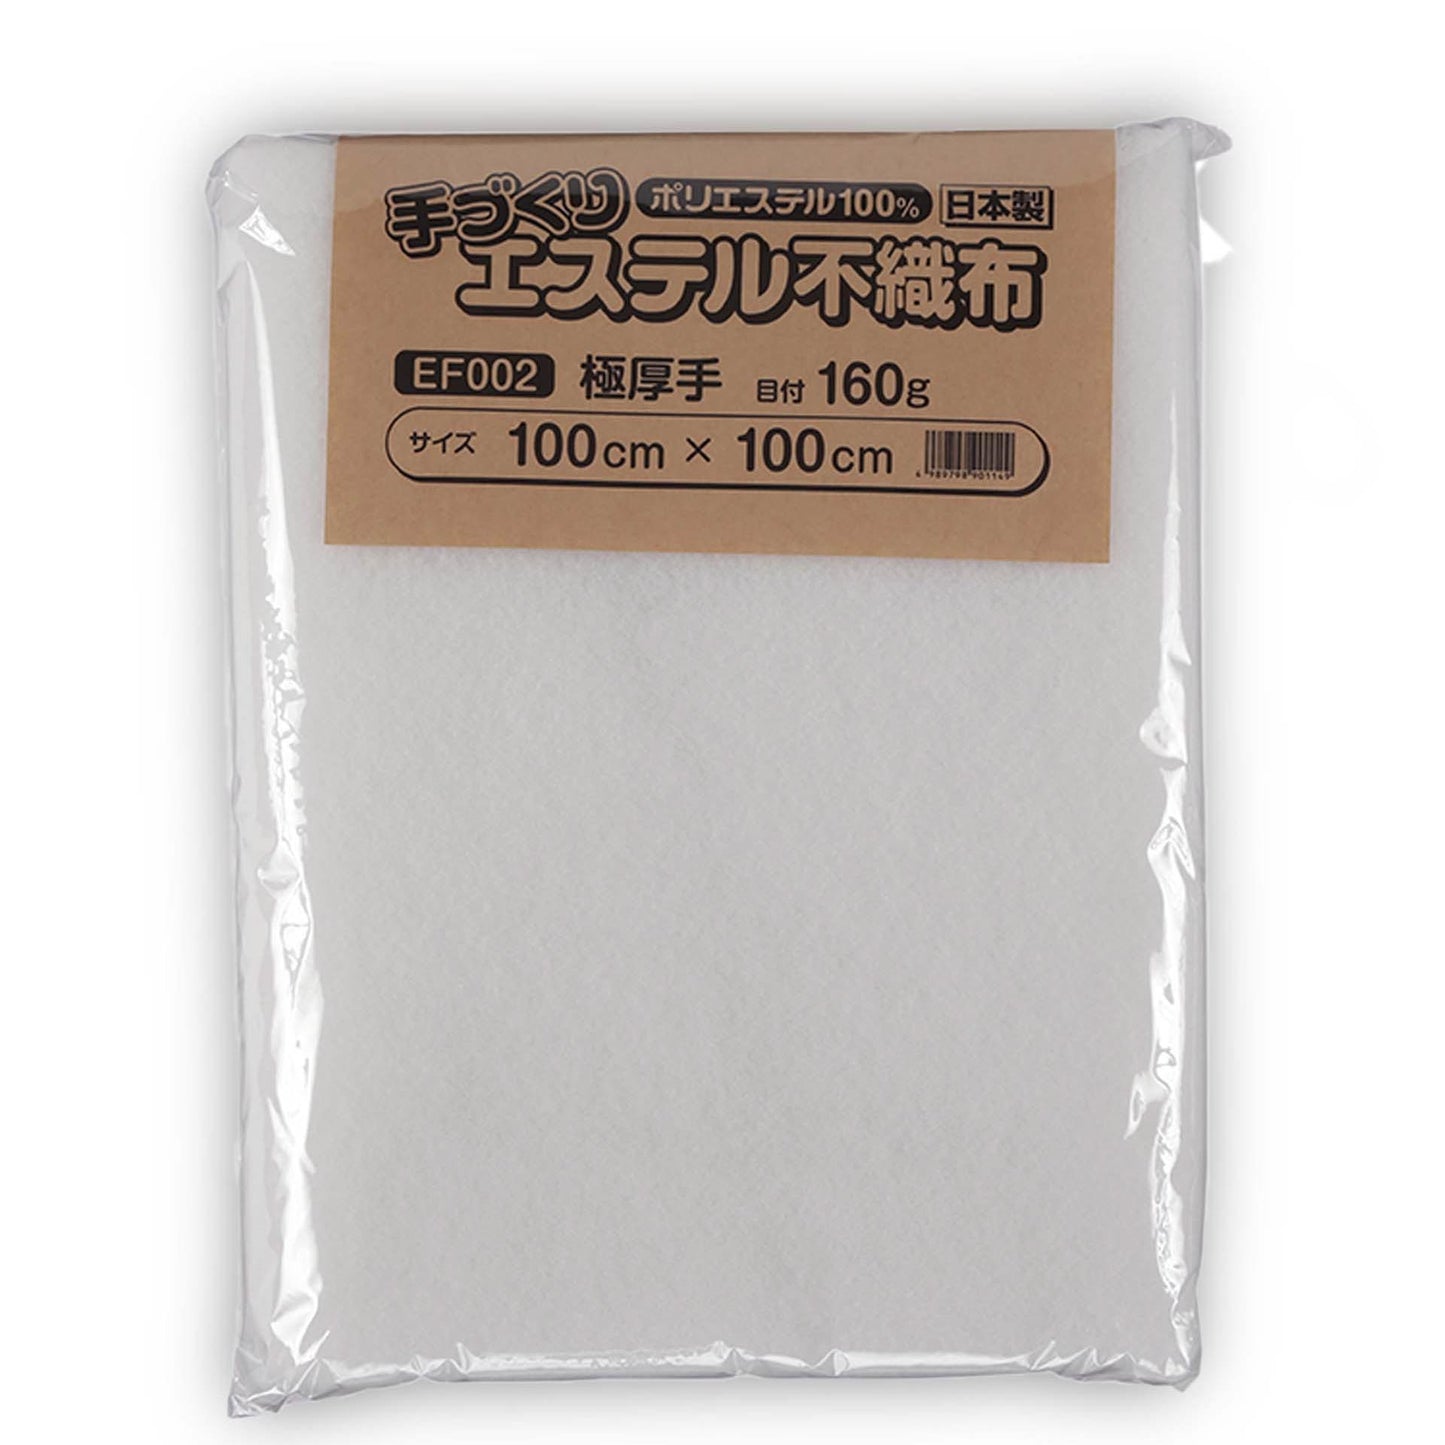 キルト芯 厚手 極厚 EF002 100cm巾 日本製 パッチワーク 小物 ドミット芯  【鞆のふとん家】